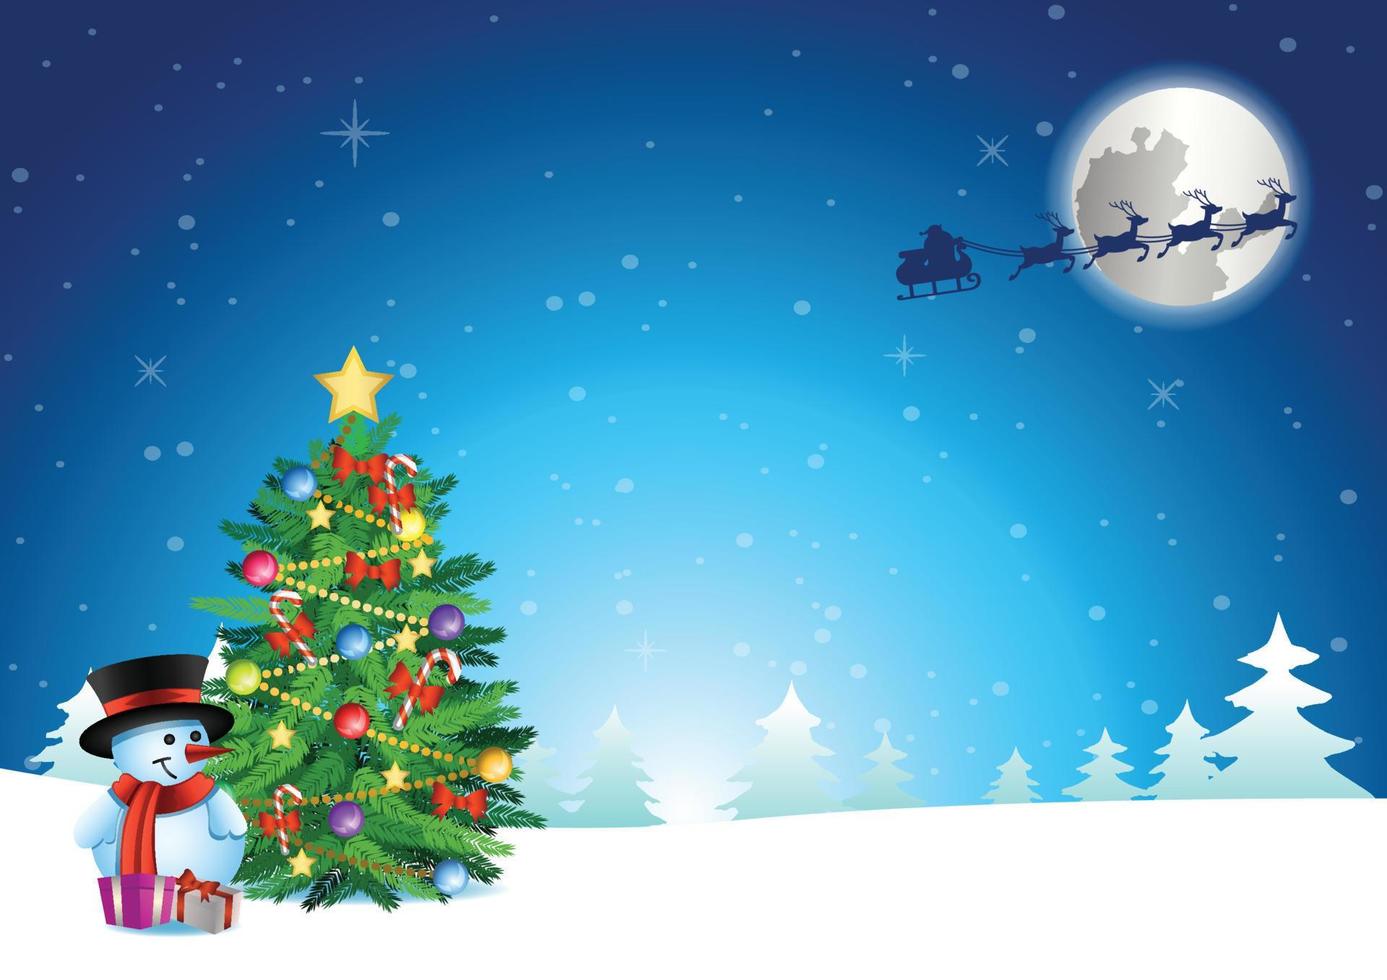 Schneemann und Weihnachtsbaum stehen auf Schnee, während der Weihnachtsmann wegfliegt, nachdem er ihm ein Geschenk geschickt hat vektor